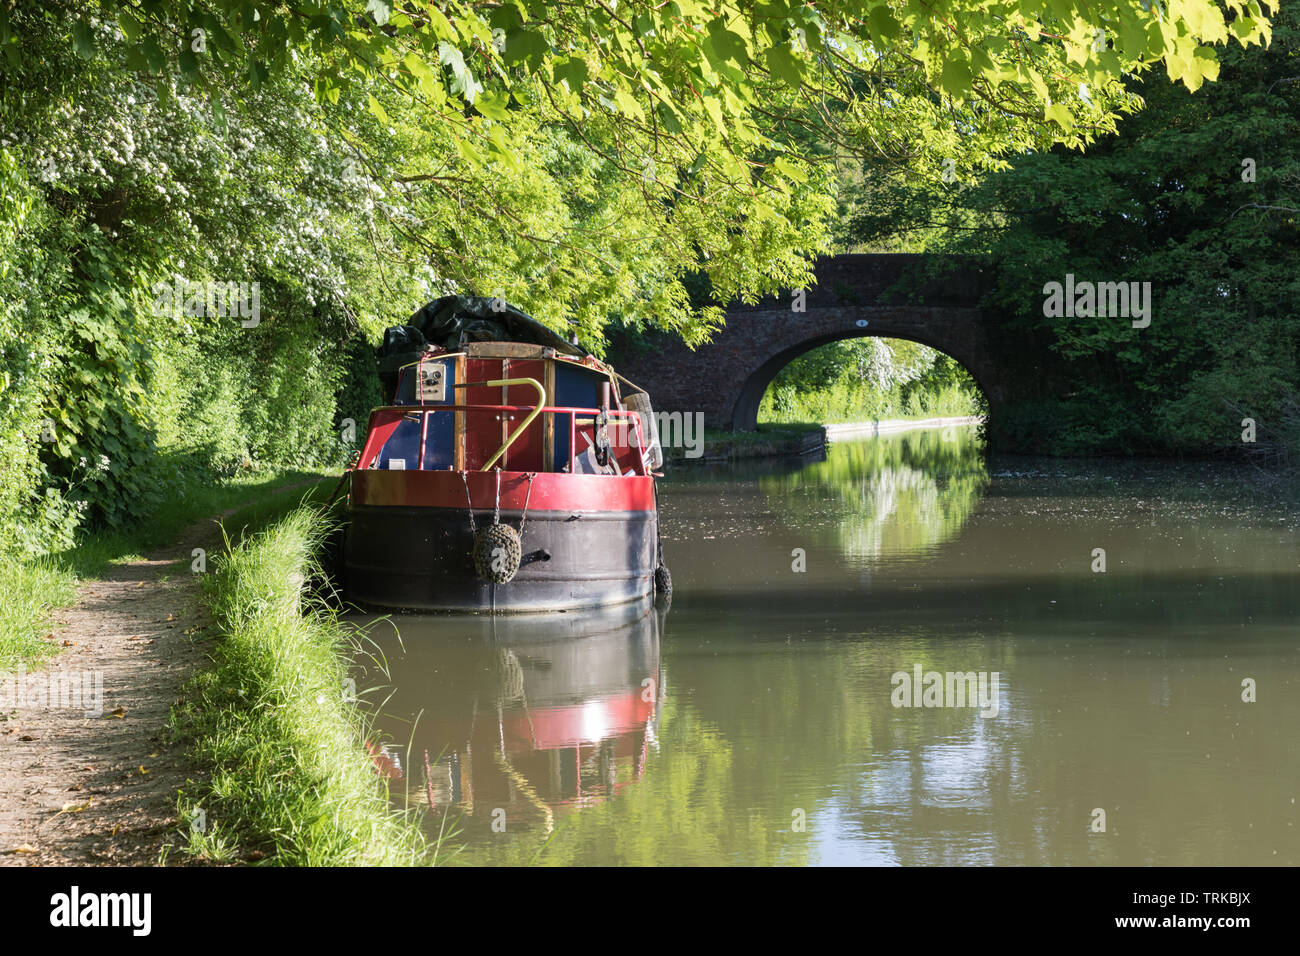 Watford, Northamptonshire, Royaume-Uni : un bateau à Narrowboat amarré contre la rive d'un canal sous des arbres à feuilles larges et les fleurs blanches d'un arbre d'aubépine. Banque D'Images